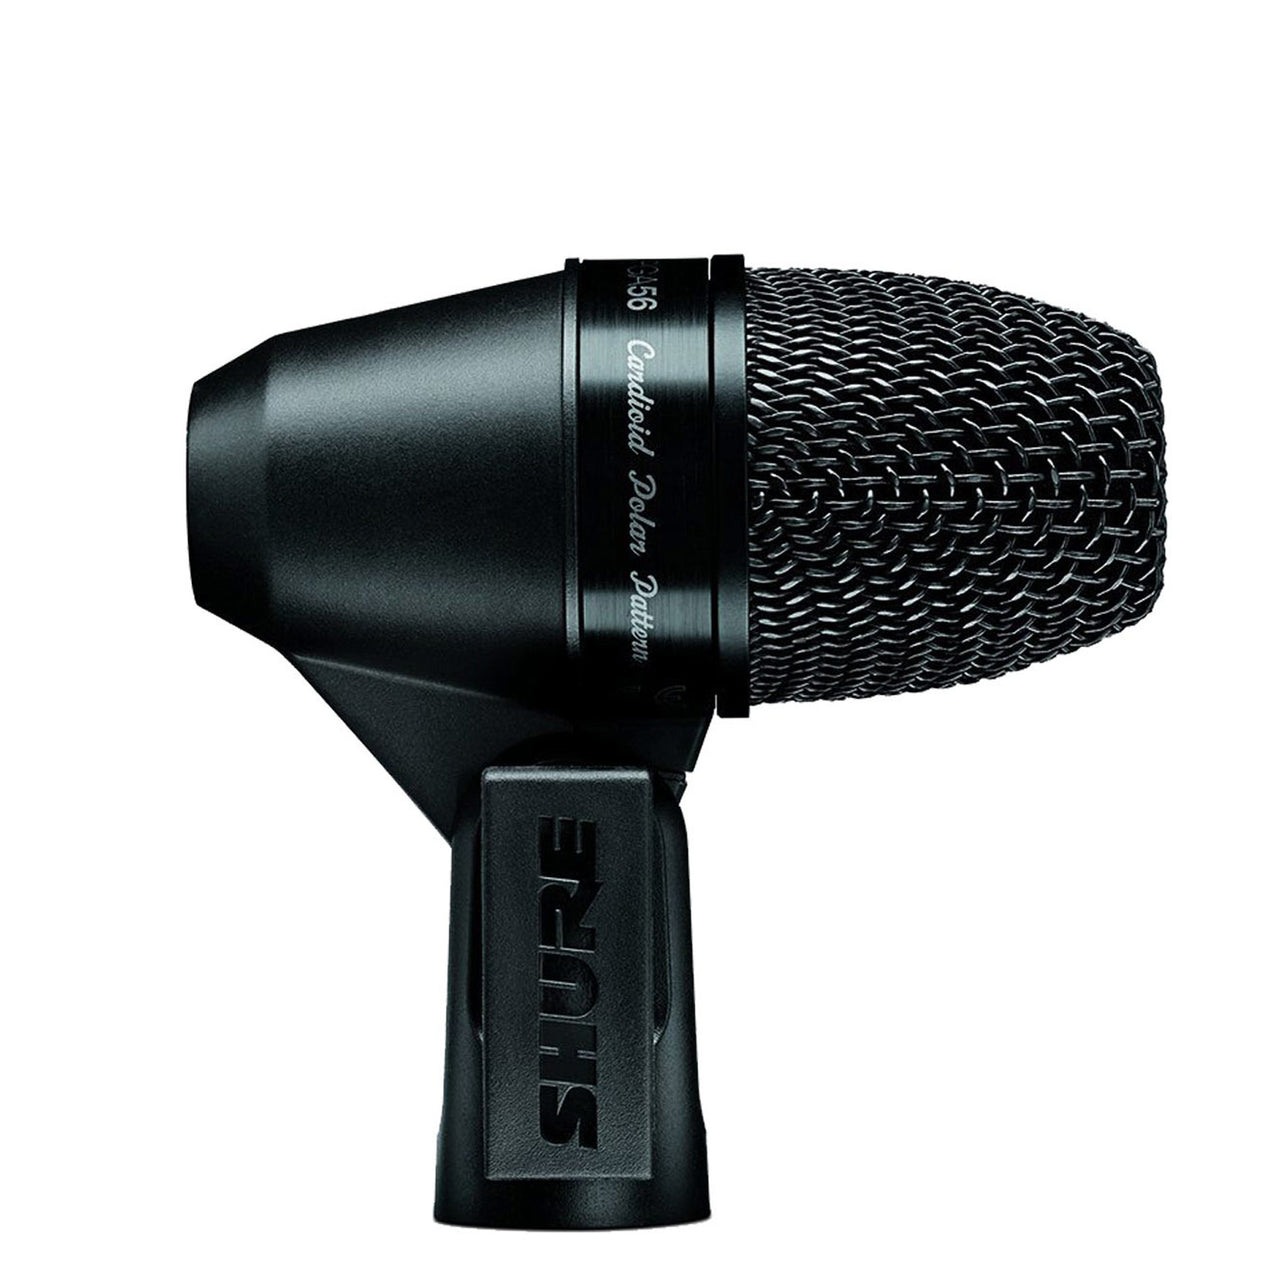 Microfono Shure Dinamico Para Percusion Y Tambores Con Cable Pga56-Xlr